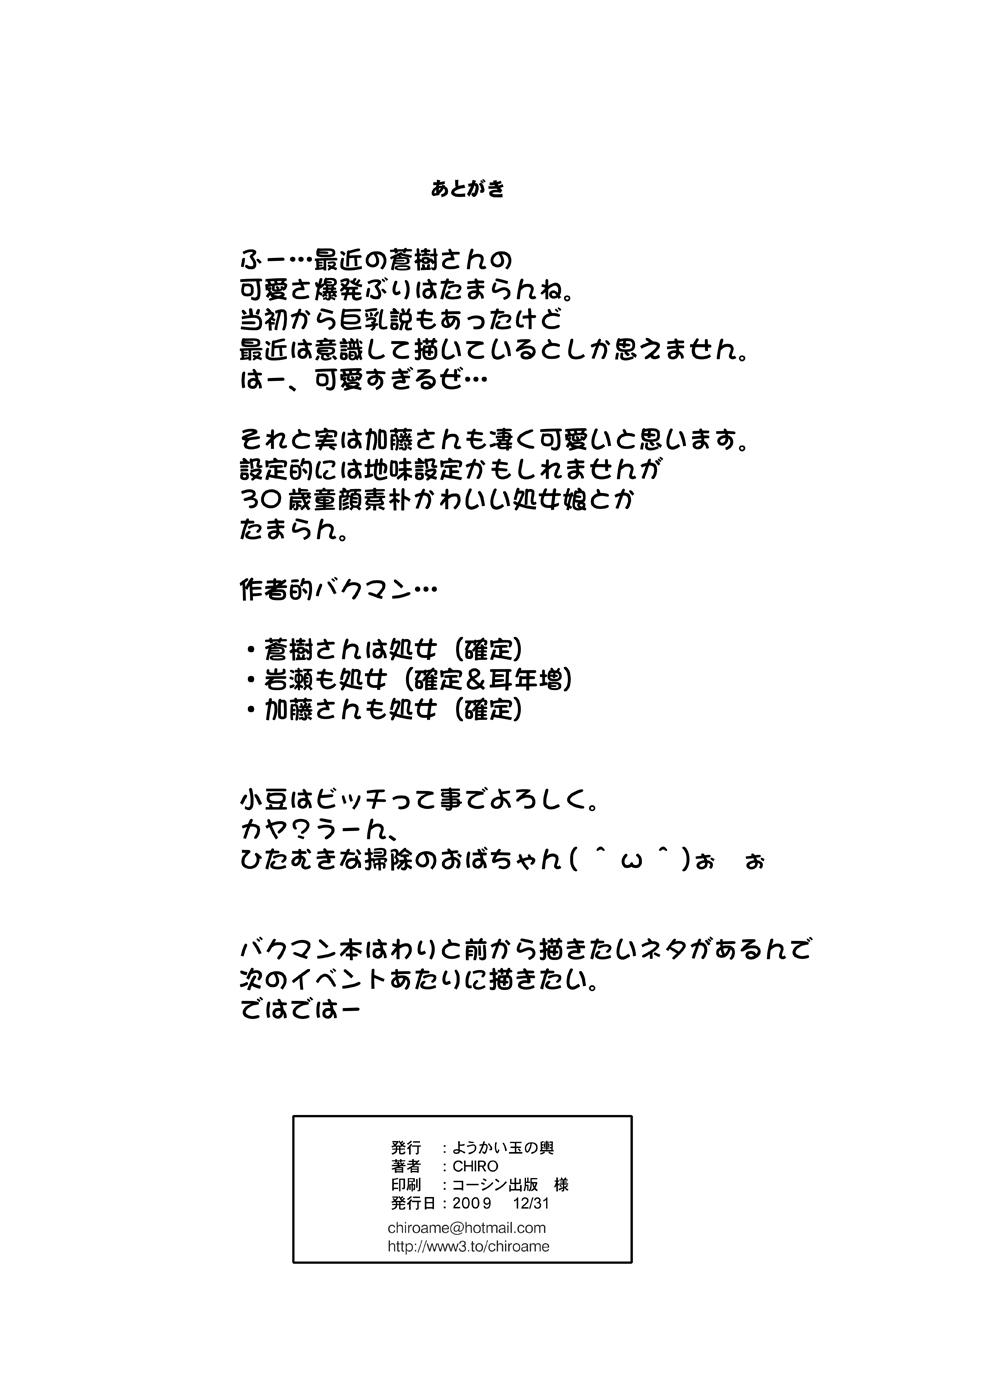 Tamanokoshi Zenbu Tsume 2001 ~ 2022 Venue Limited Edition 33